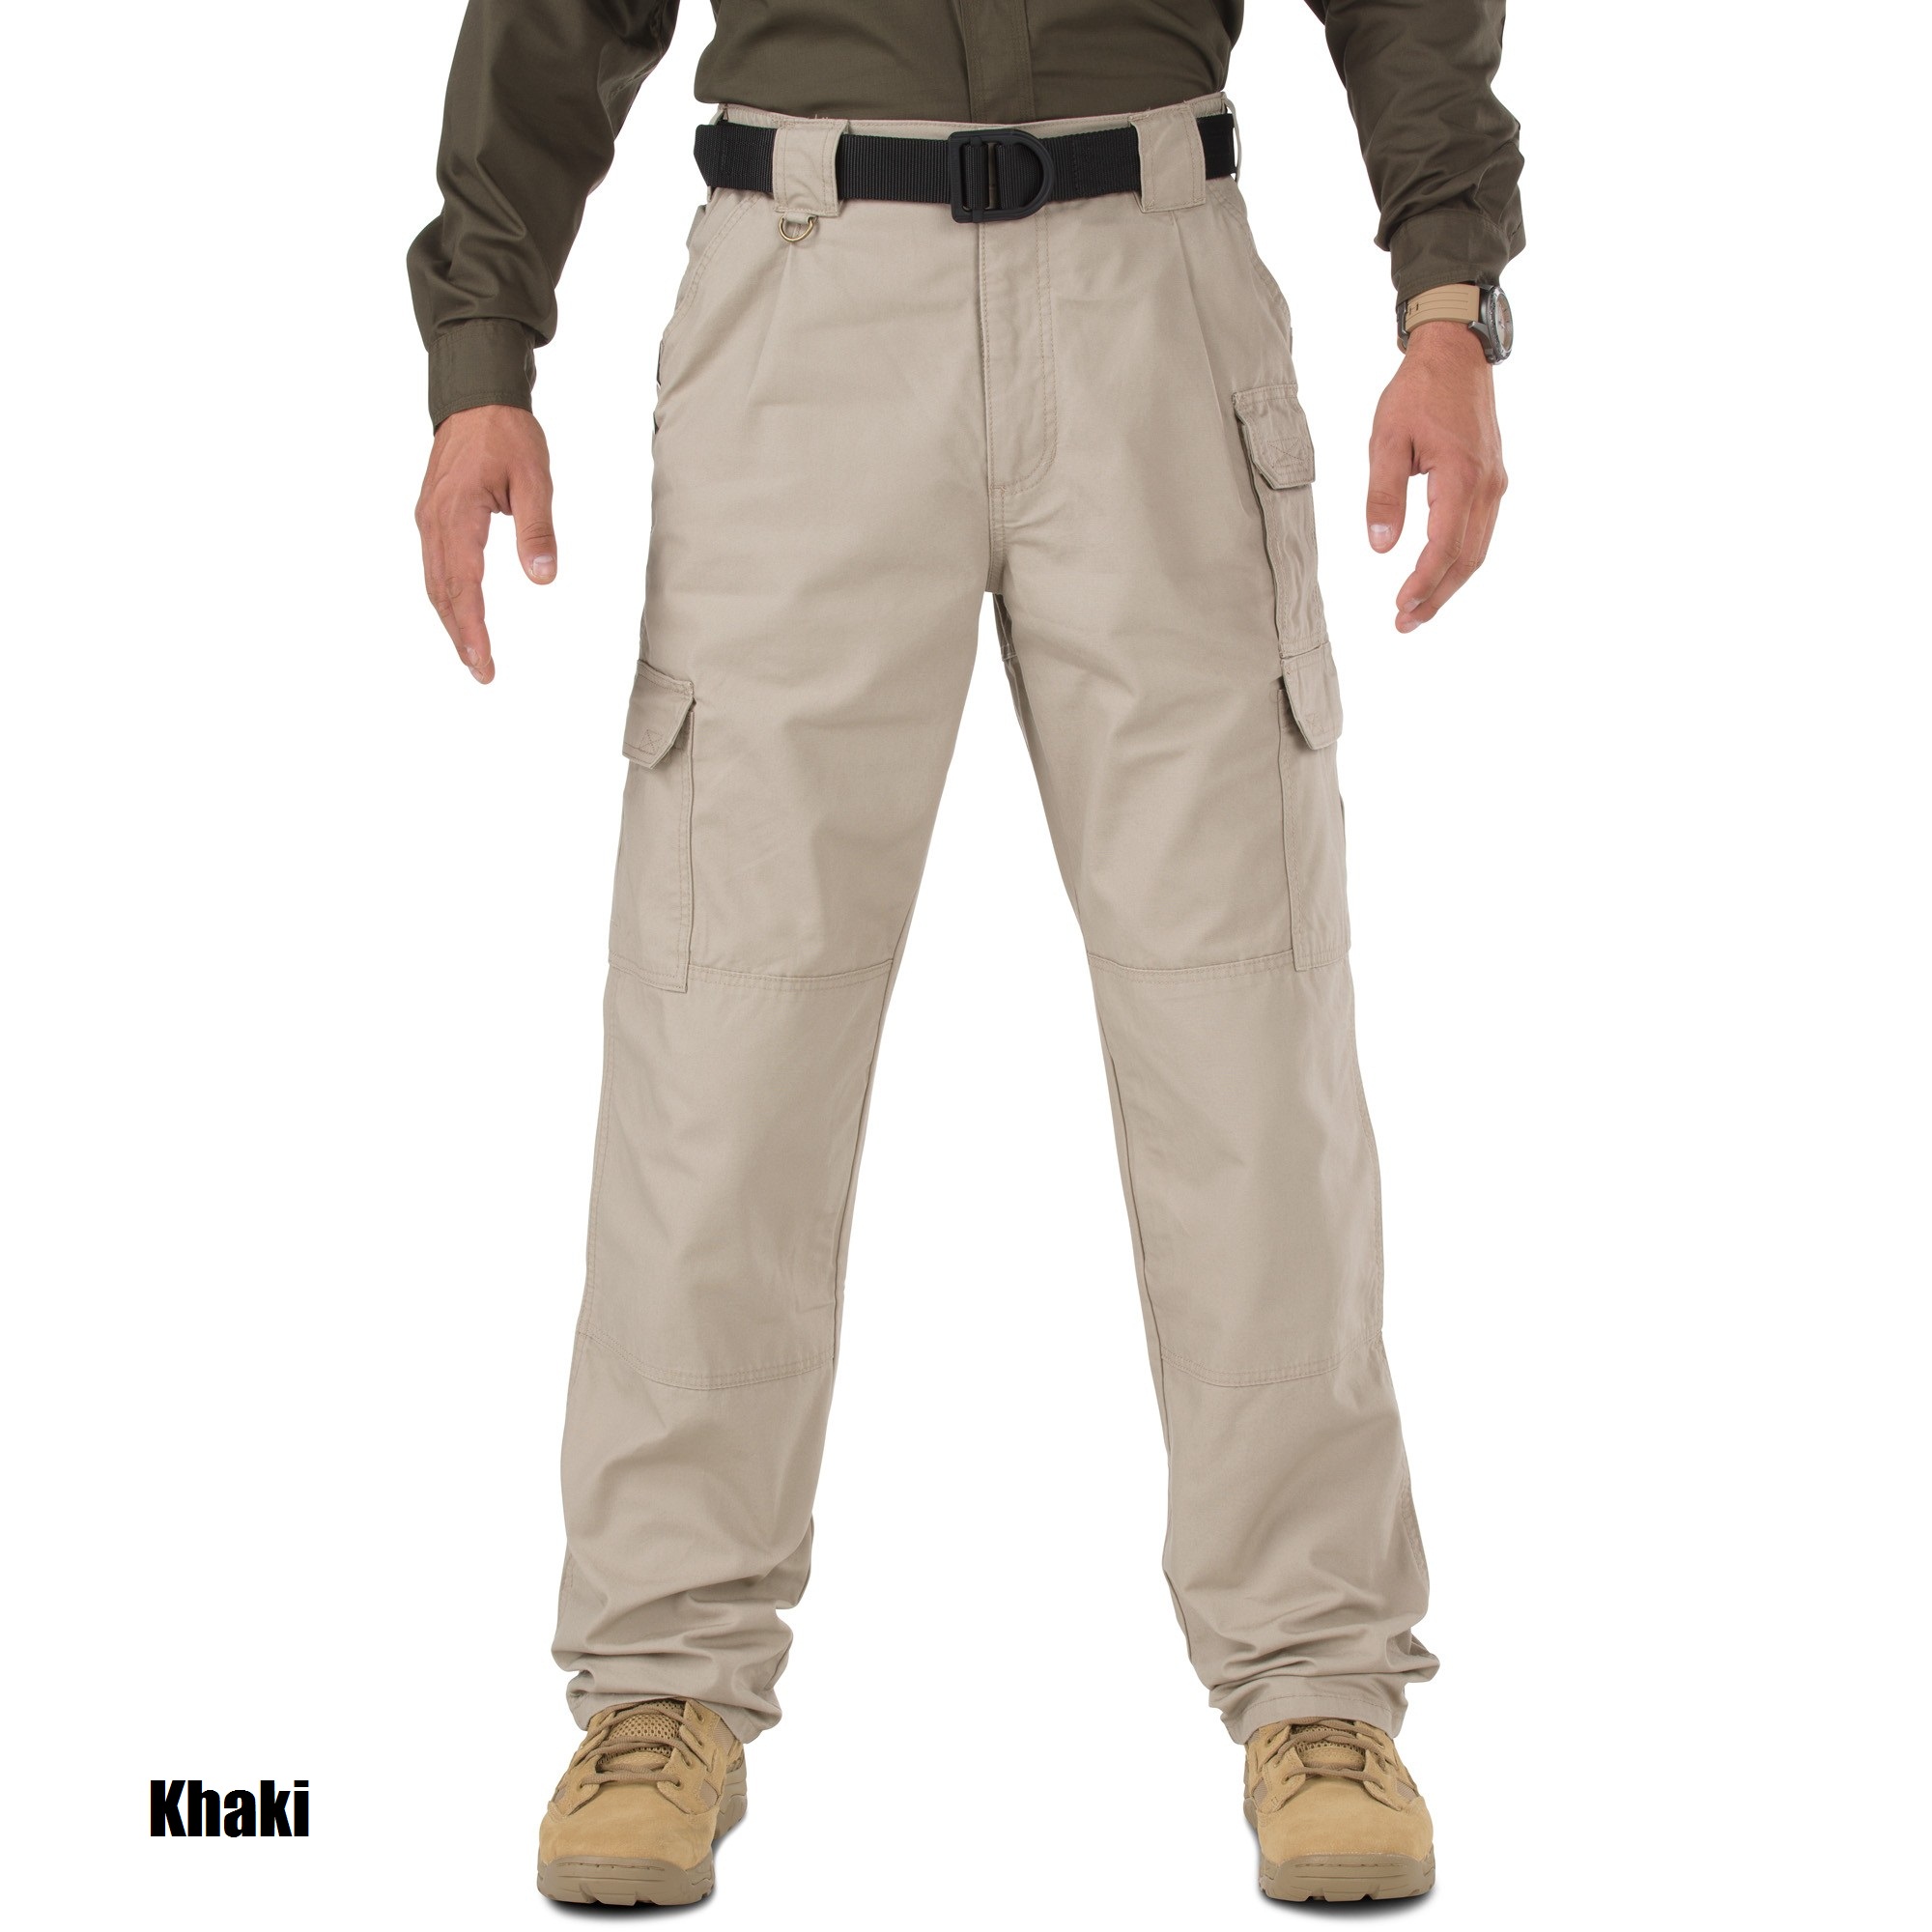 5.11 Tactical Pants